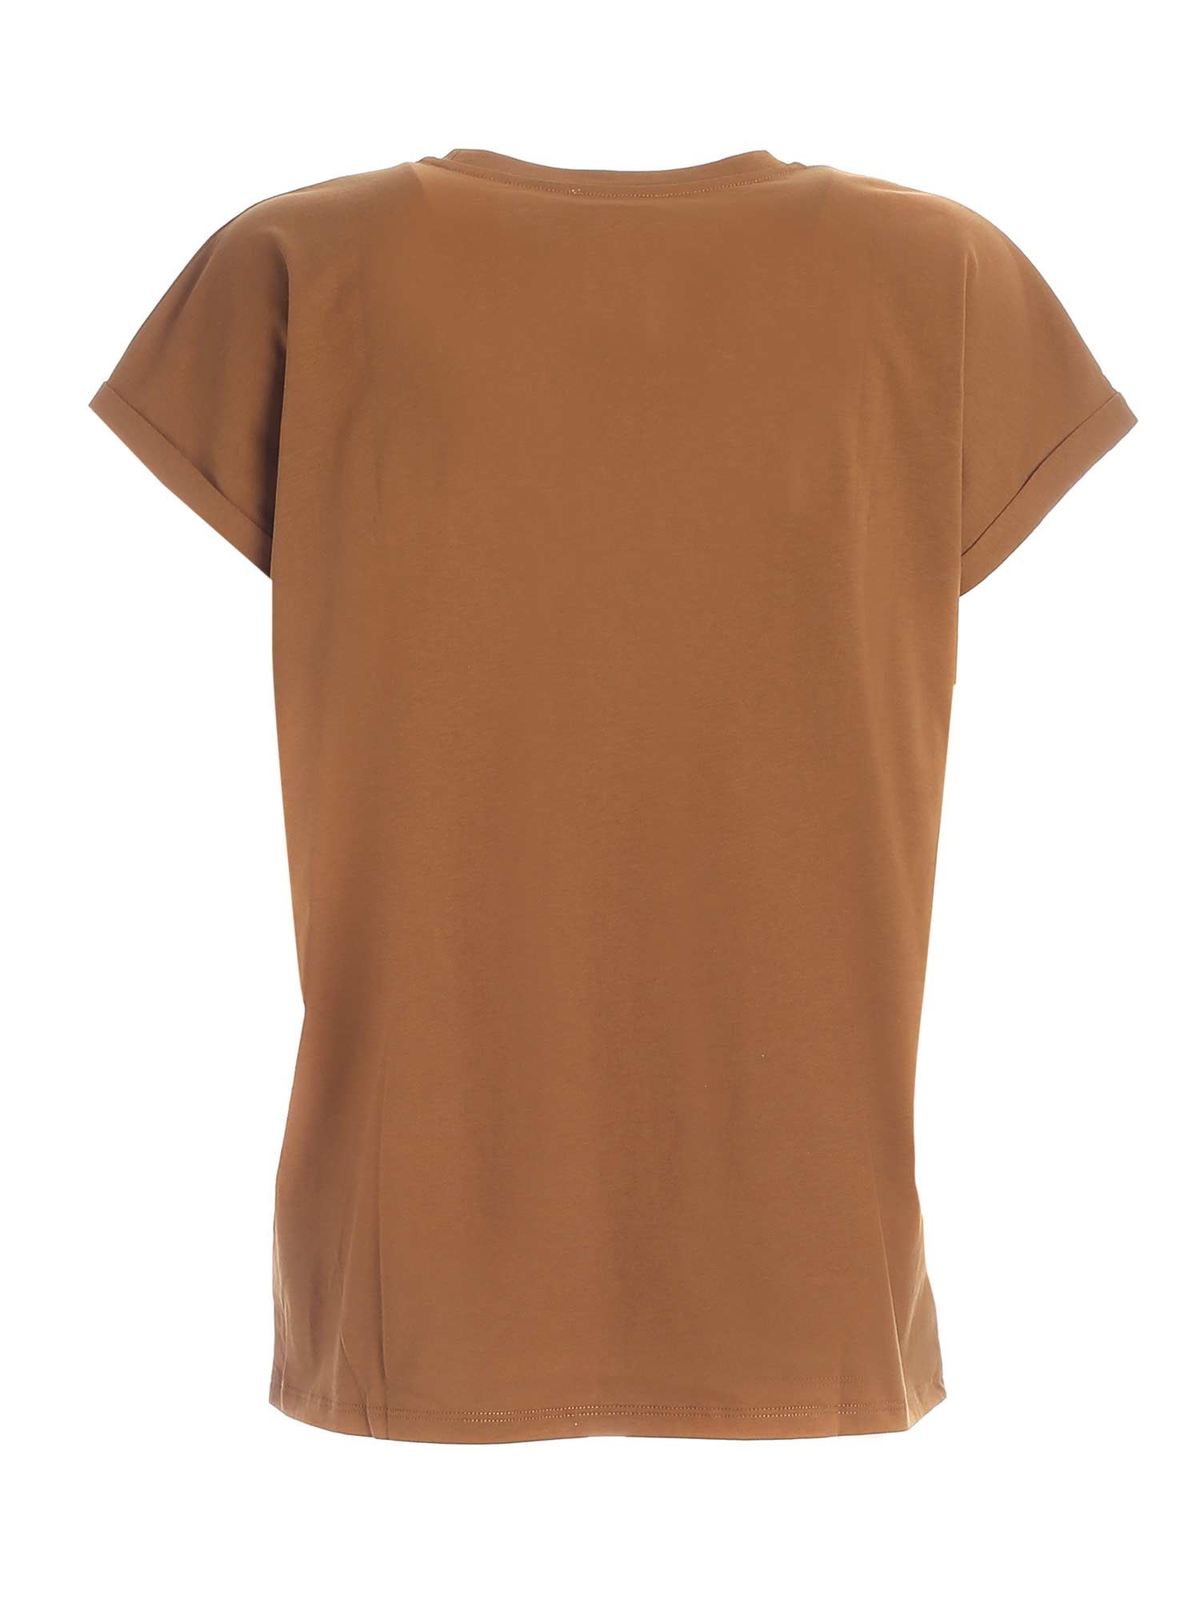 Mig selv absolutte bånd T-shirts Balmain - Logo patch T-shirt in camel color - UF01351I5908KJ